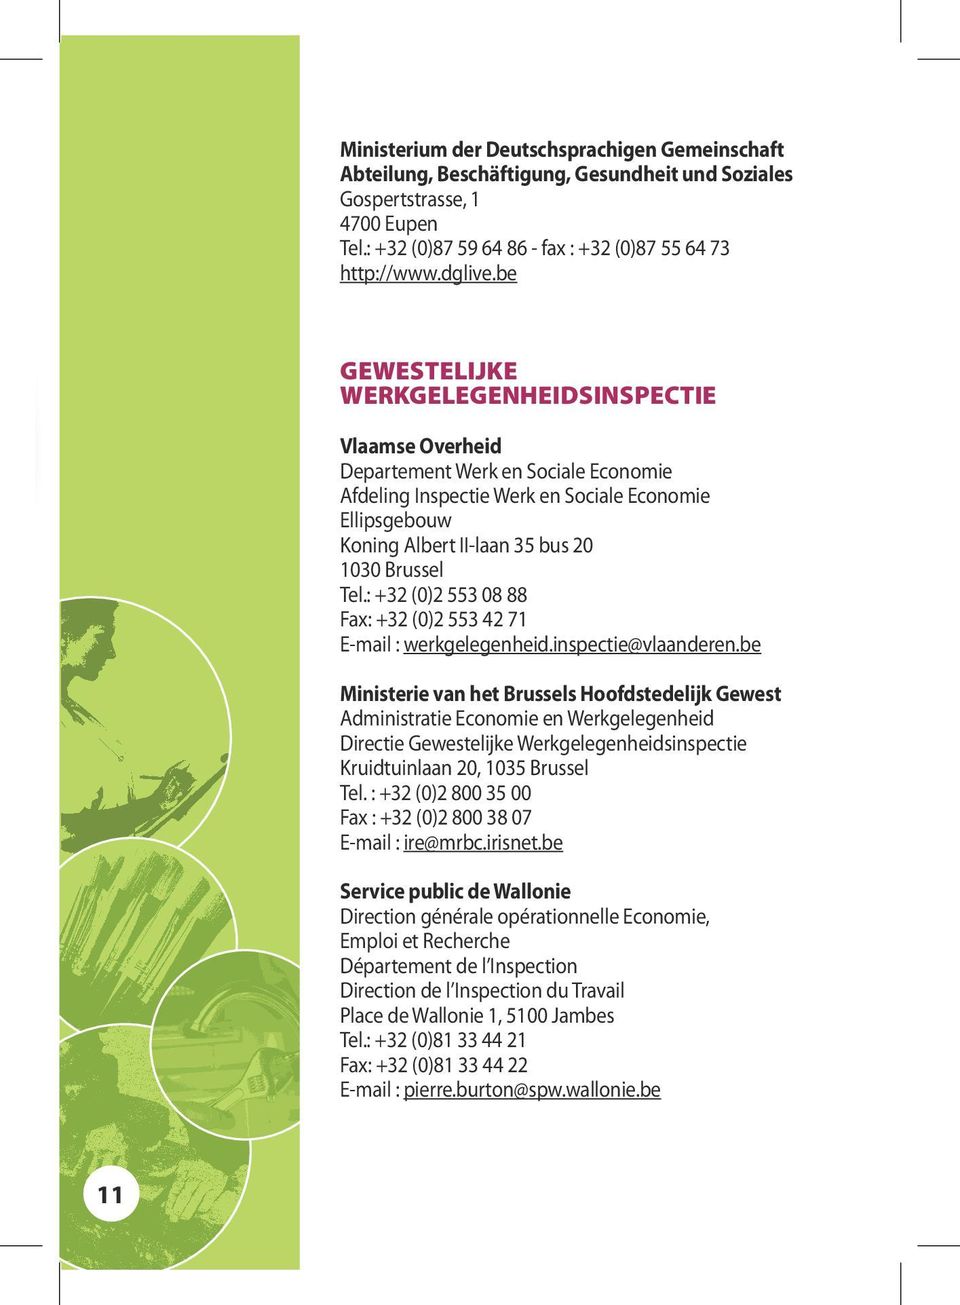 Tel.: +32 (0)2 553 08 88 Fax: +32 (0)2 553 42 71 E-mail : werkgelegenheid.inspectie@vlaanderen.